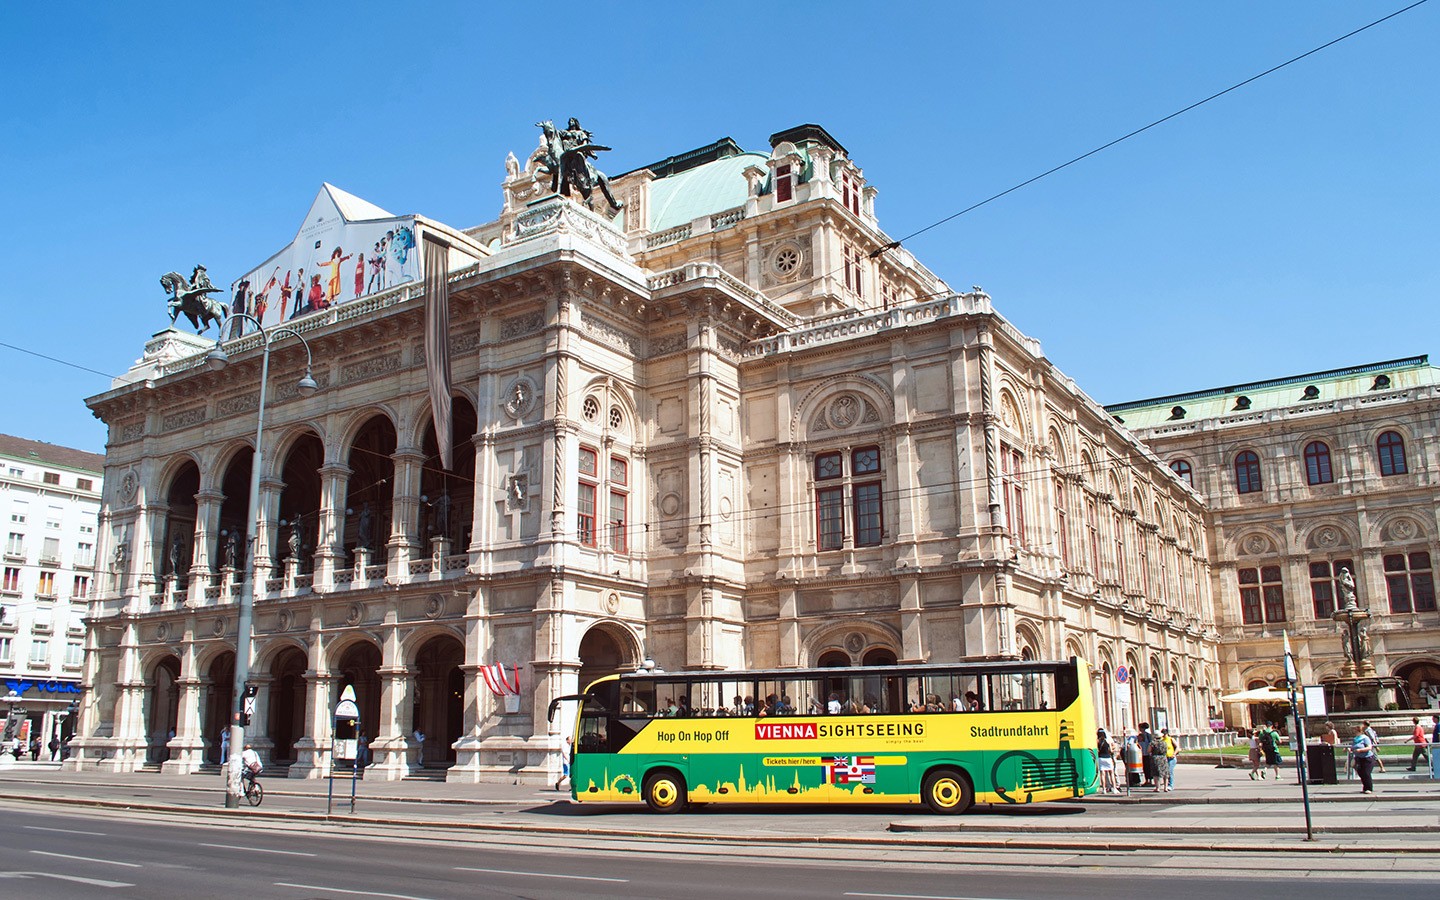 Visiting Vienna on a budget: 19 ways to save money in Vienna